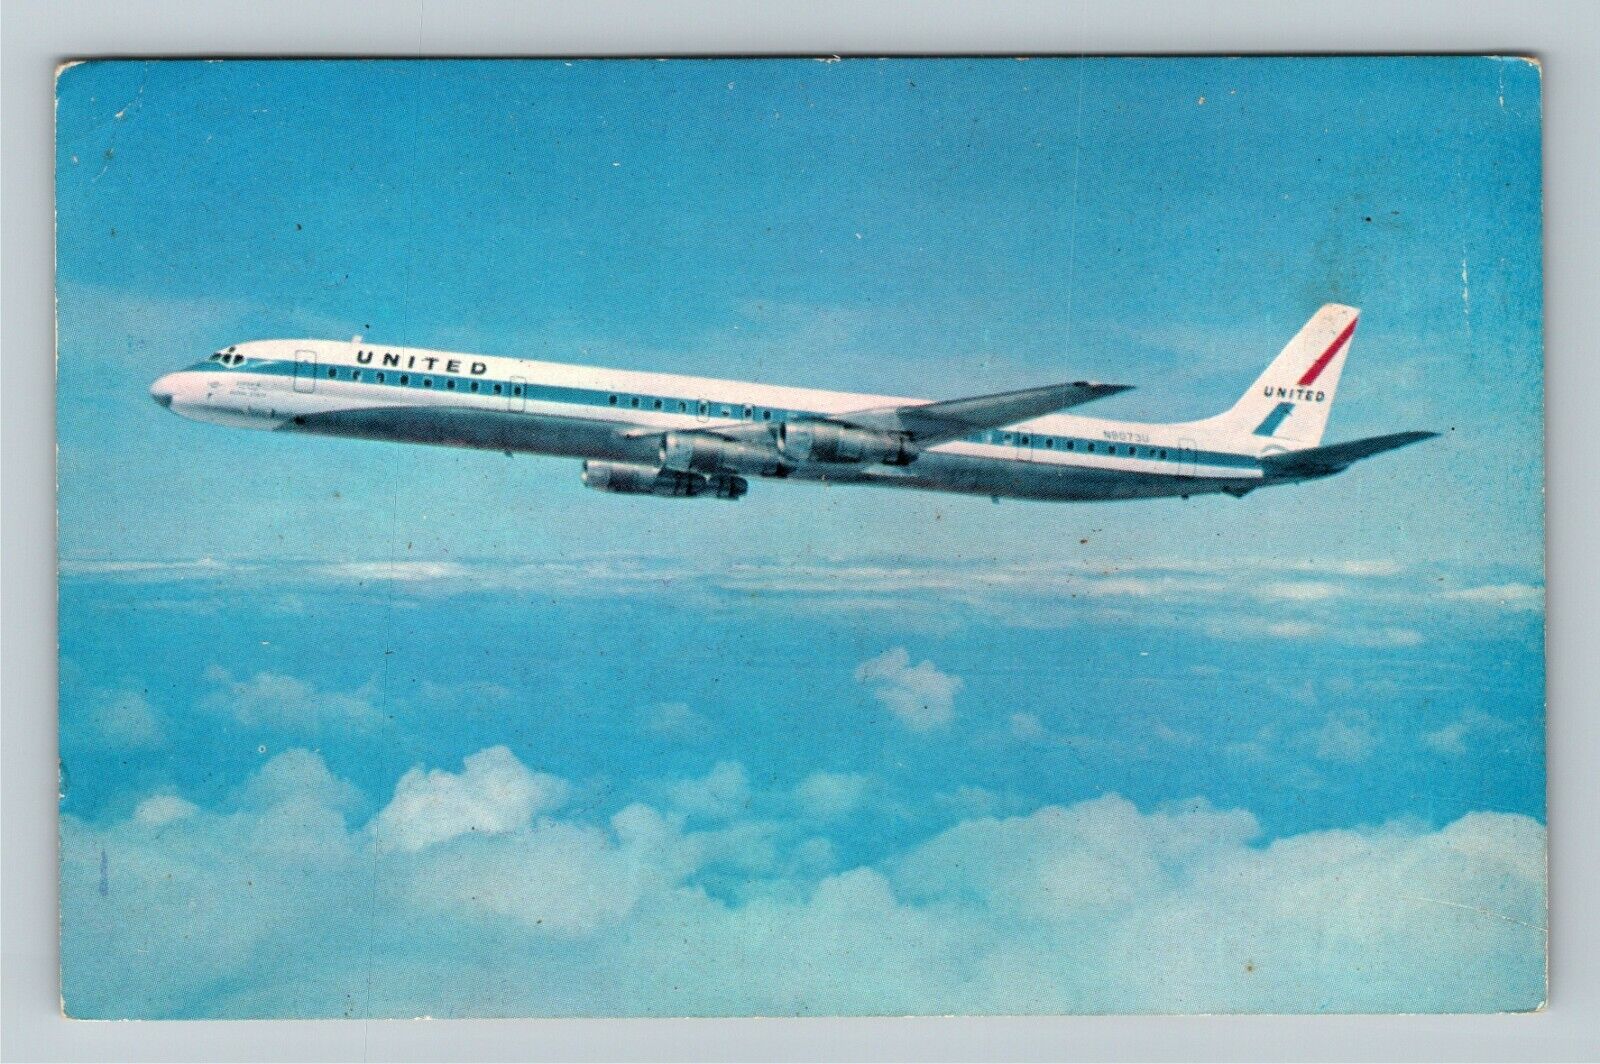 United Super DC-8 Antique Aircraft Vintage Souvenir Postcard